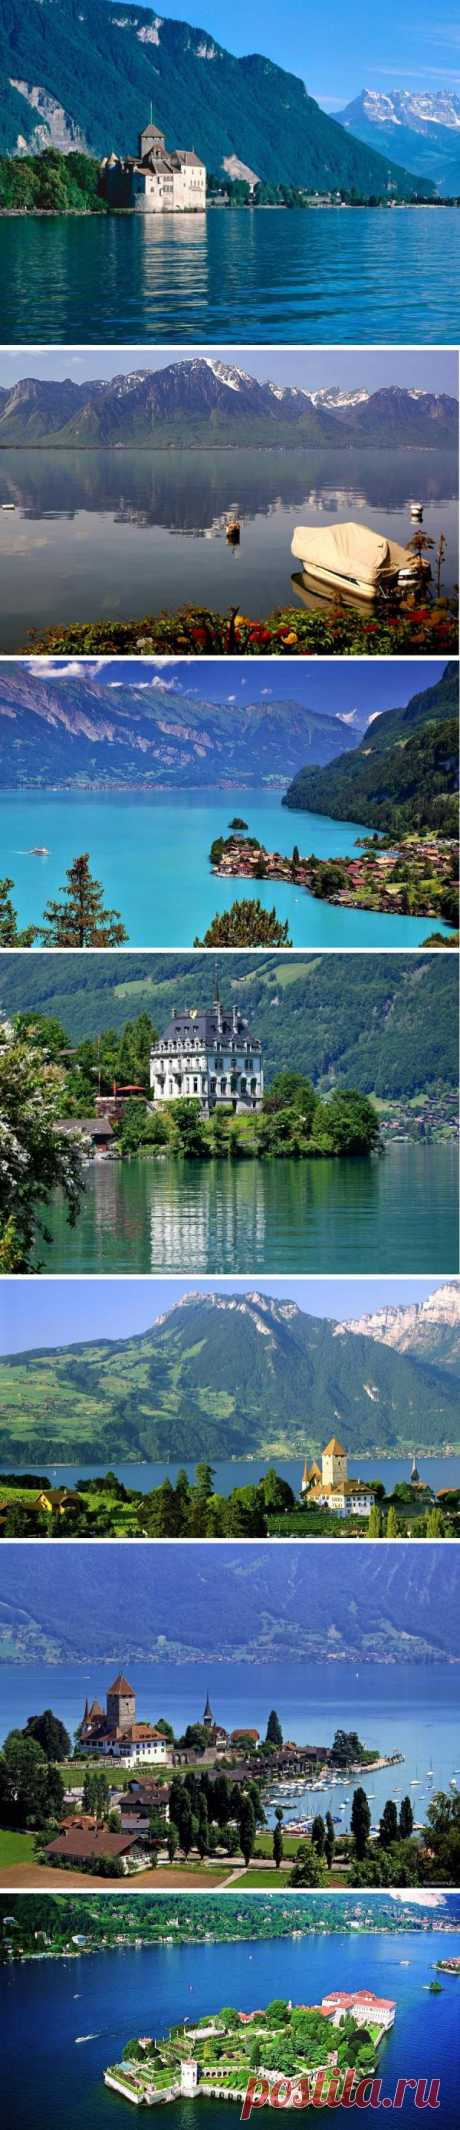 Швейцария - страна озёр, отдых на которых всегда считался не только полезным, но и очень престижным. В Швейцарии находится около 200 озёр и каждое из них – это чудесный уголок, сказочное творение природы, посещение которого запоминается надолго